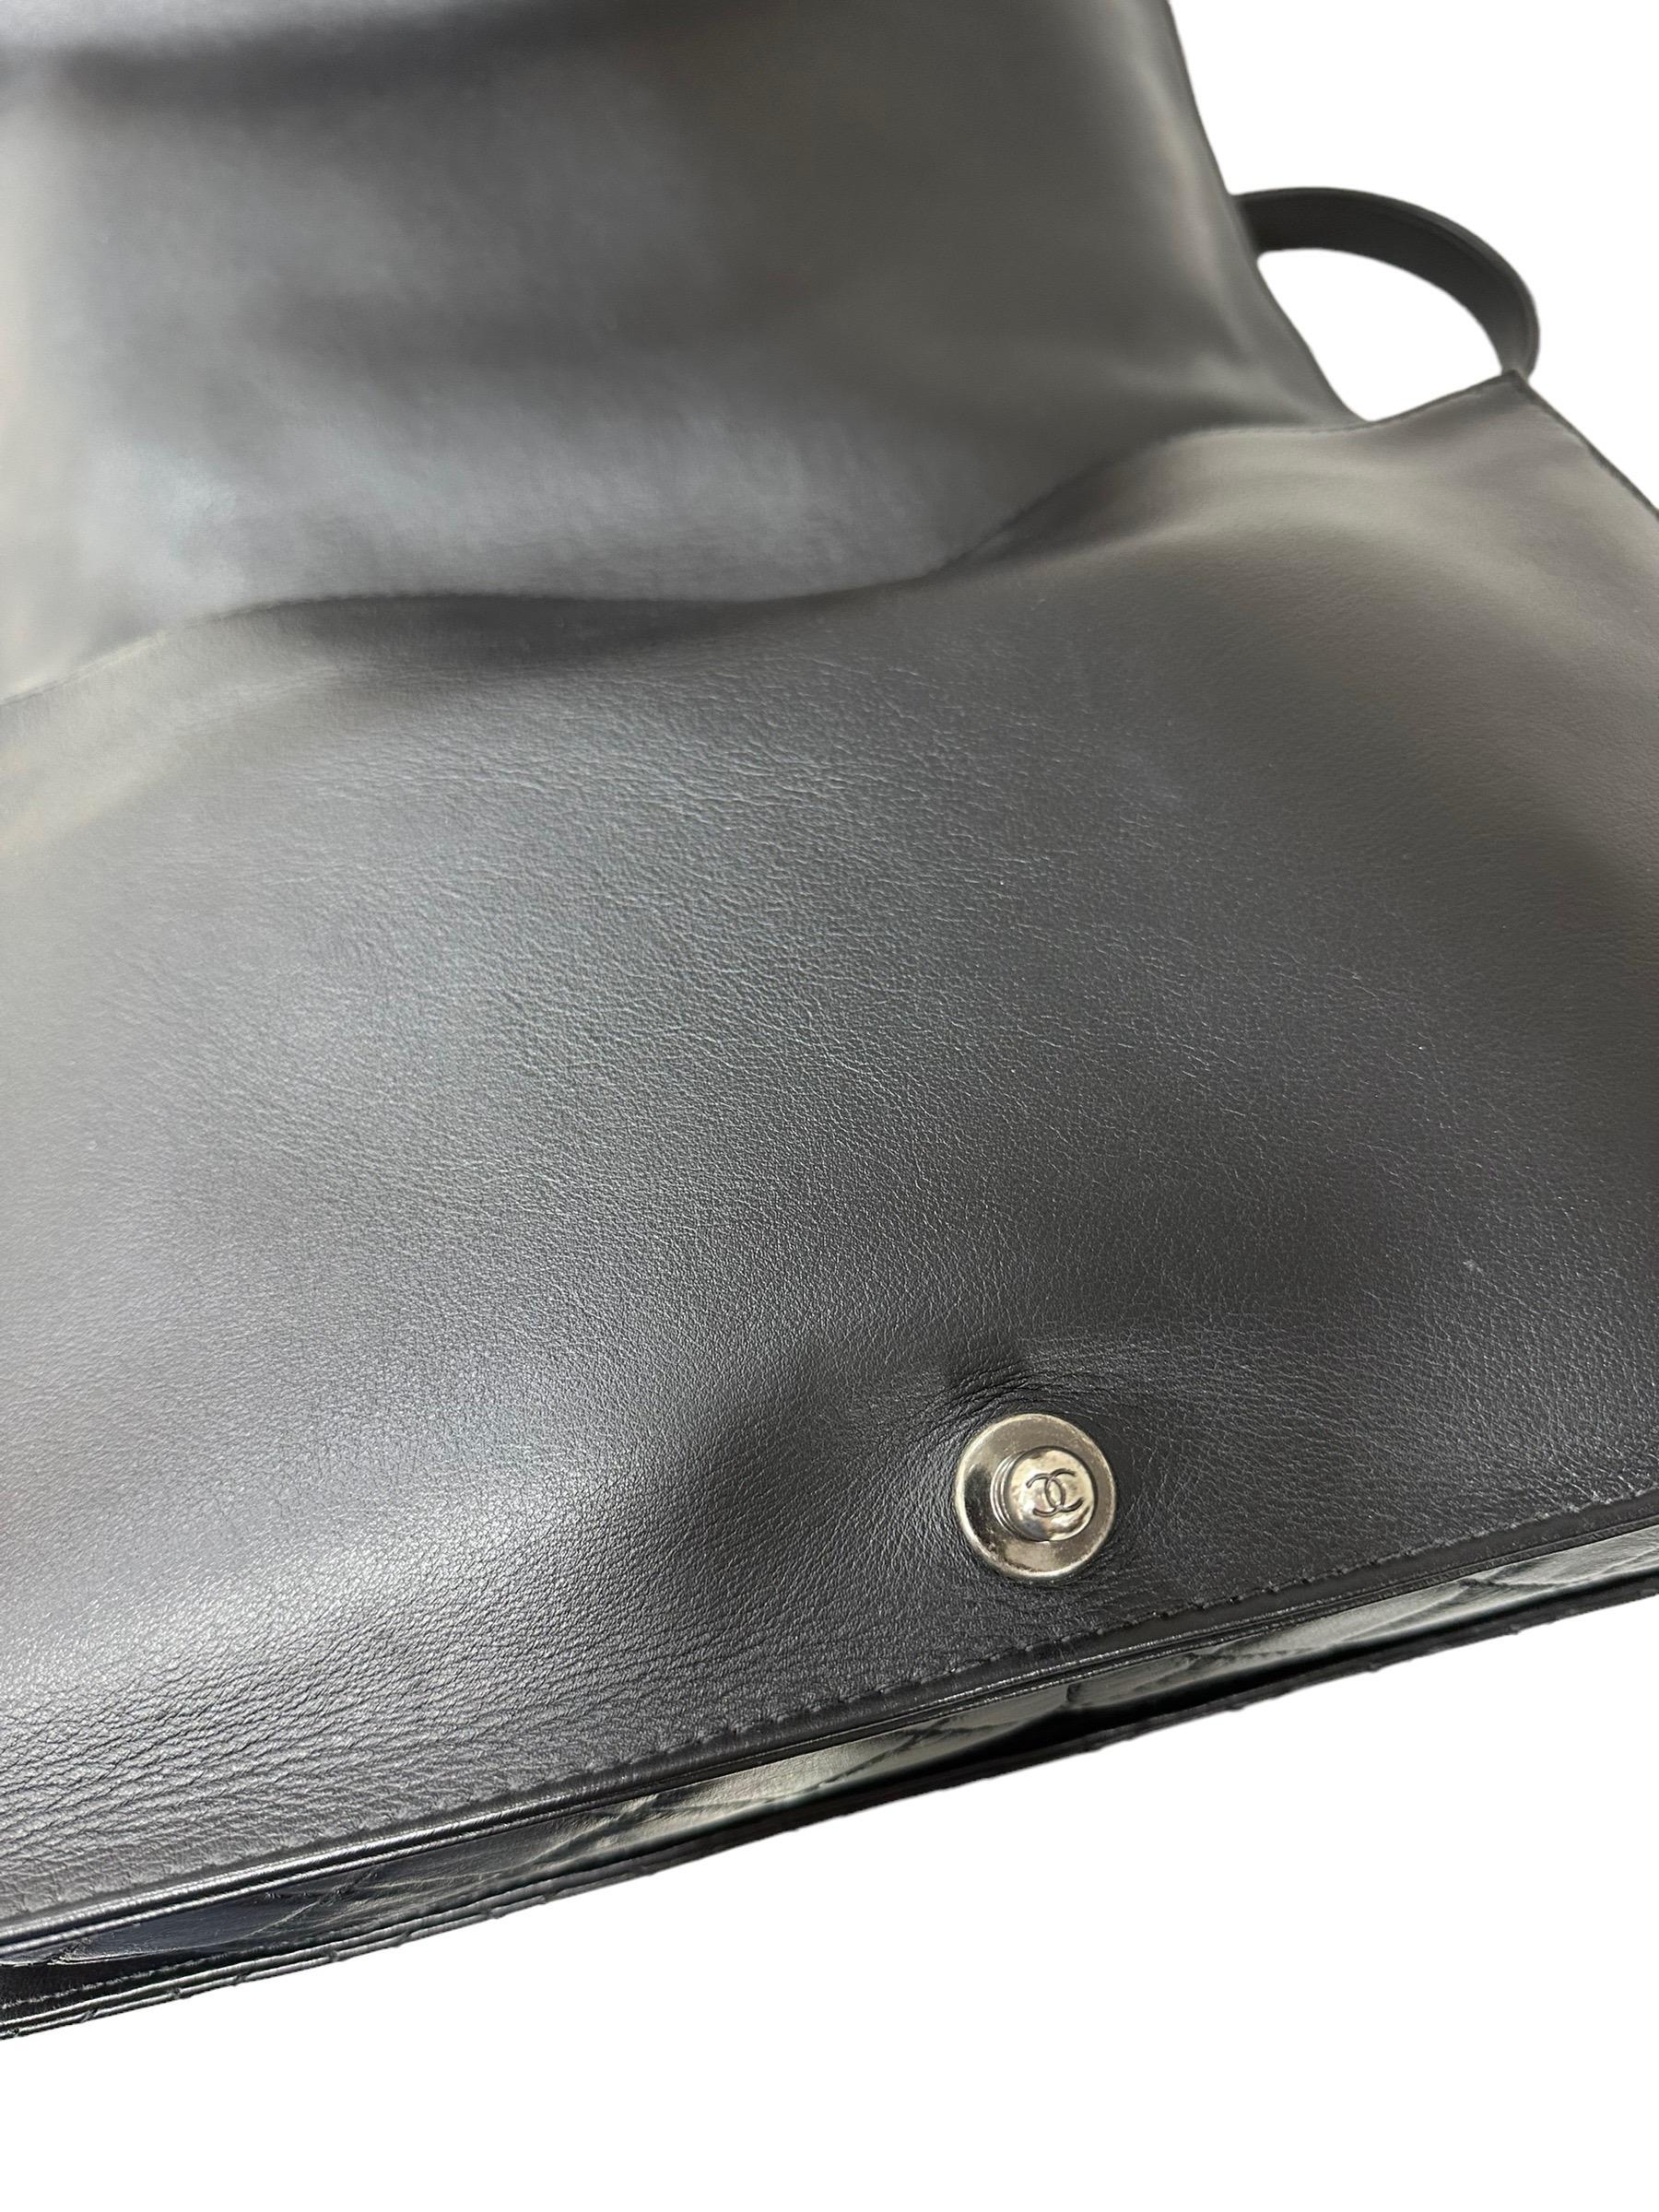 2014 Chanel Boy XL Limited Edition Shoulder Bag Multi Chains 8